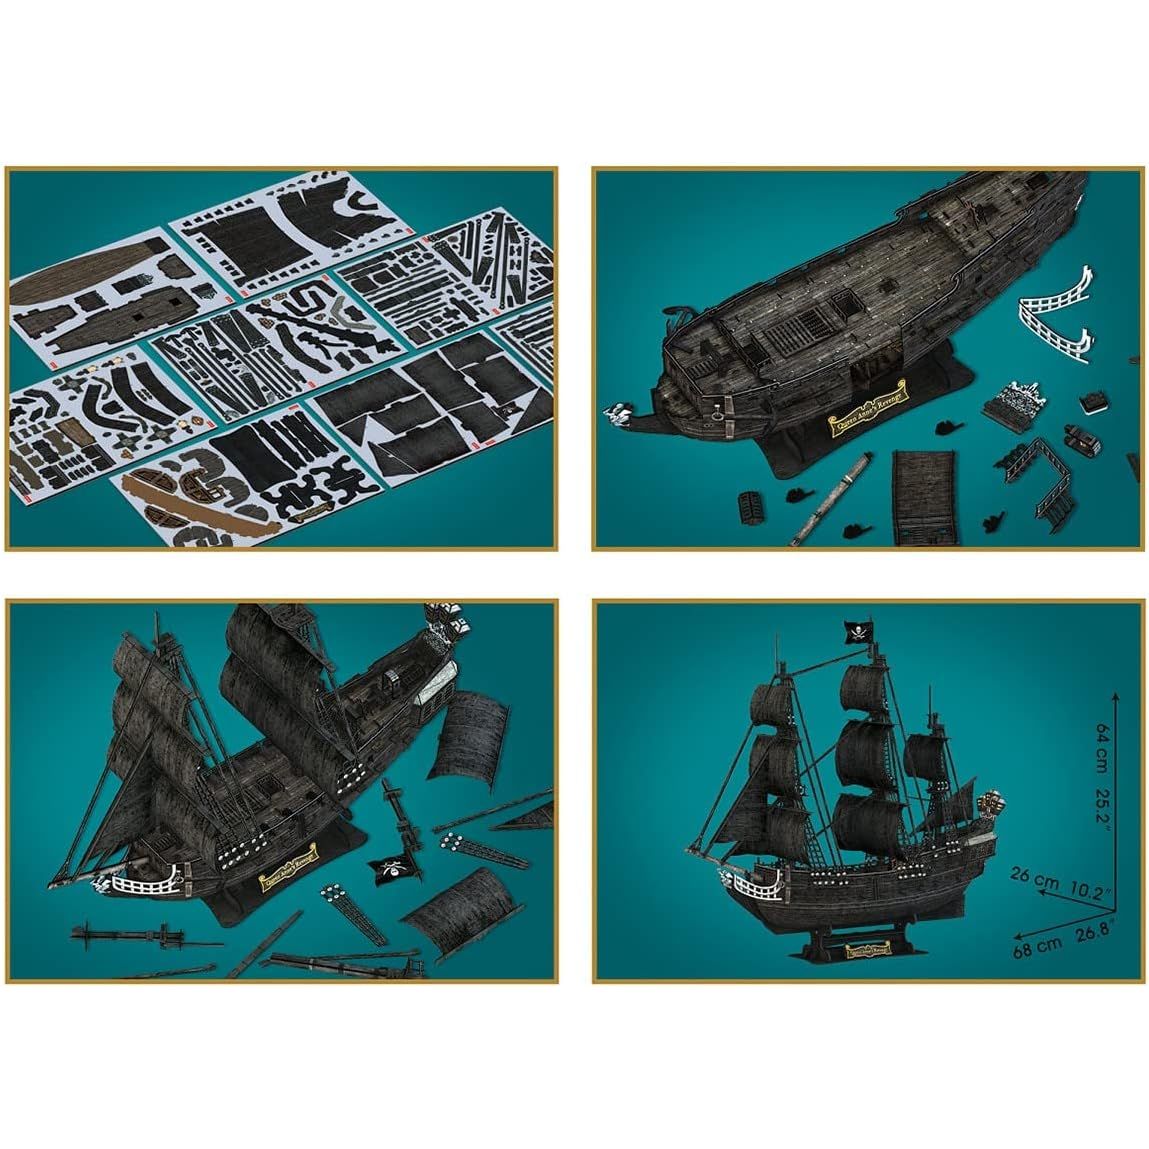 Cubicfun 3D Puzzle Of Queen Anne's Revenge Blackbeard's ship